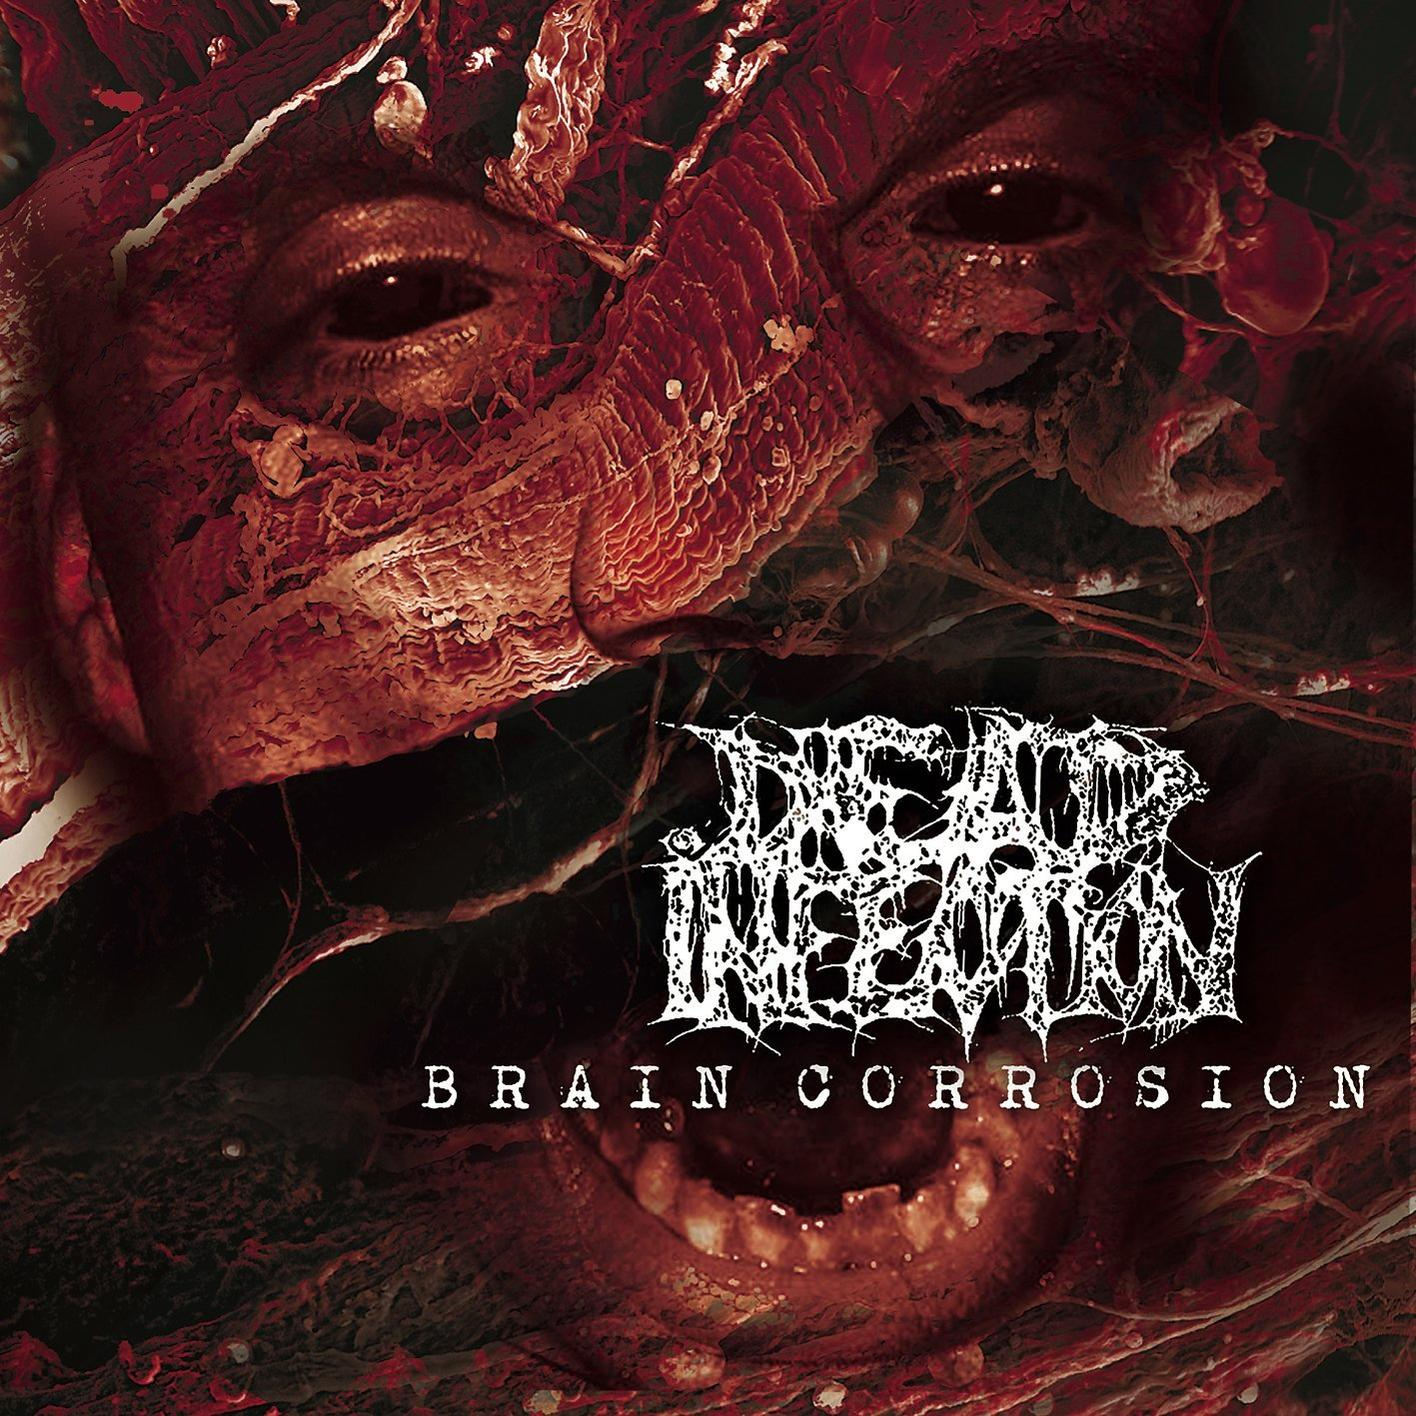 Infection (Vinyl) Corrosion - LP) Brain - (Vinyl Dead